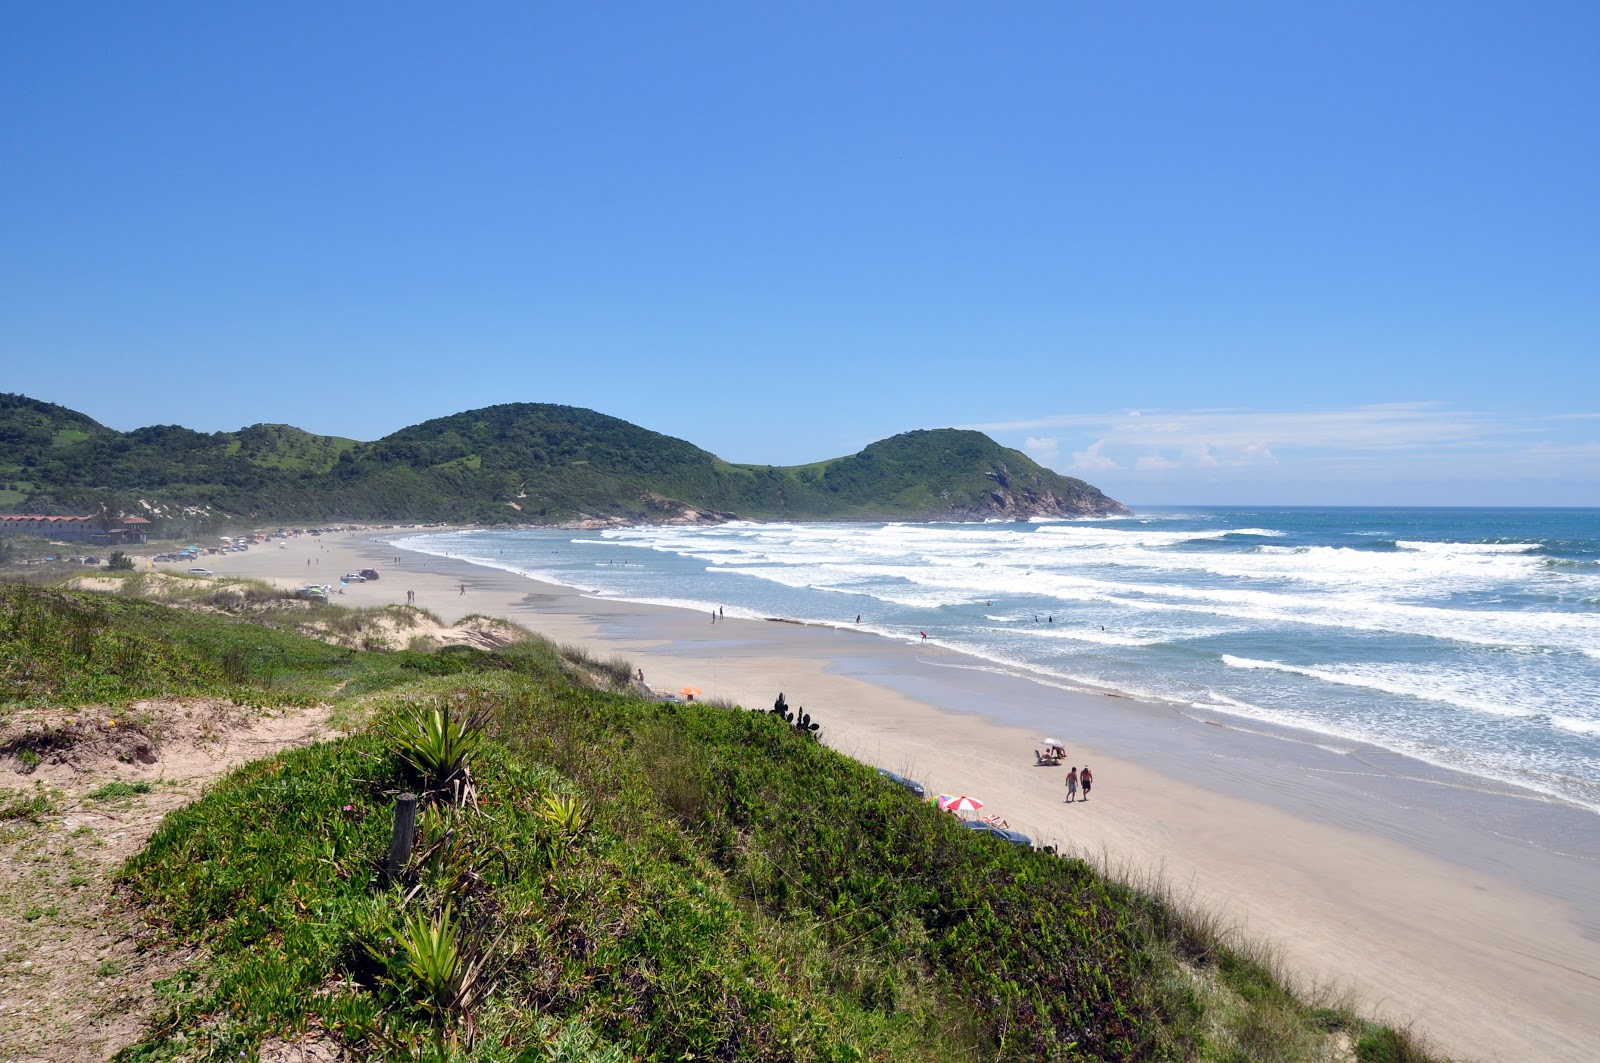 Praia do Luz'in fotoğrafı geniş plaj ile birlikte